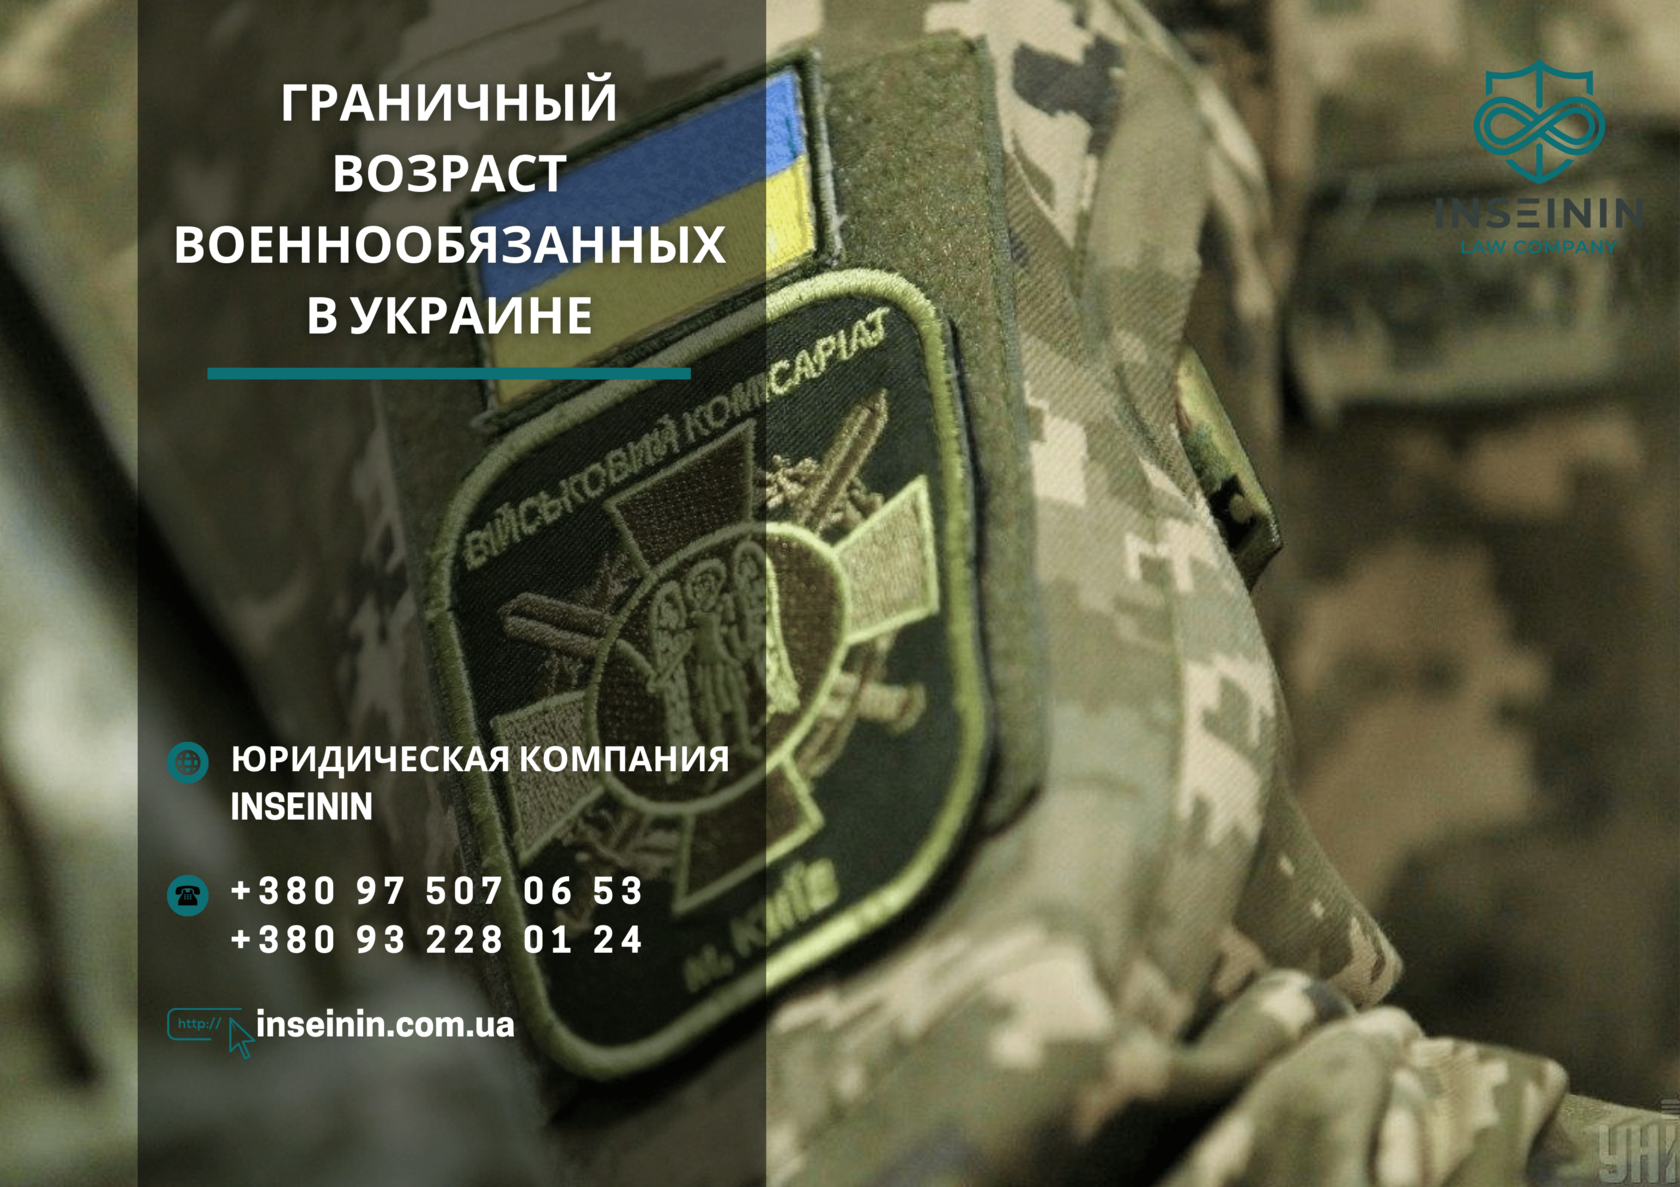 Граничный возраст военнообязанных в Украине